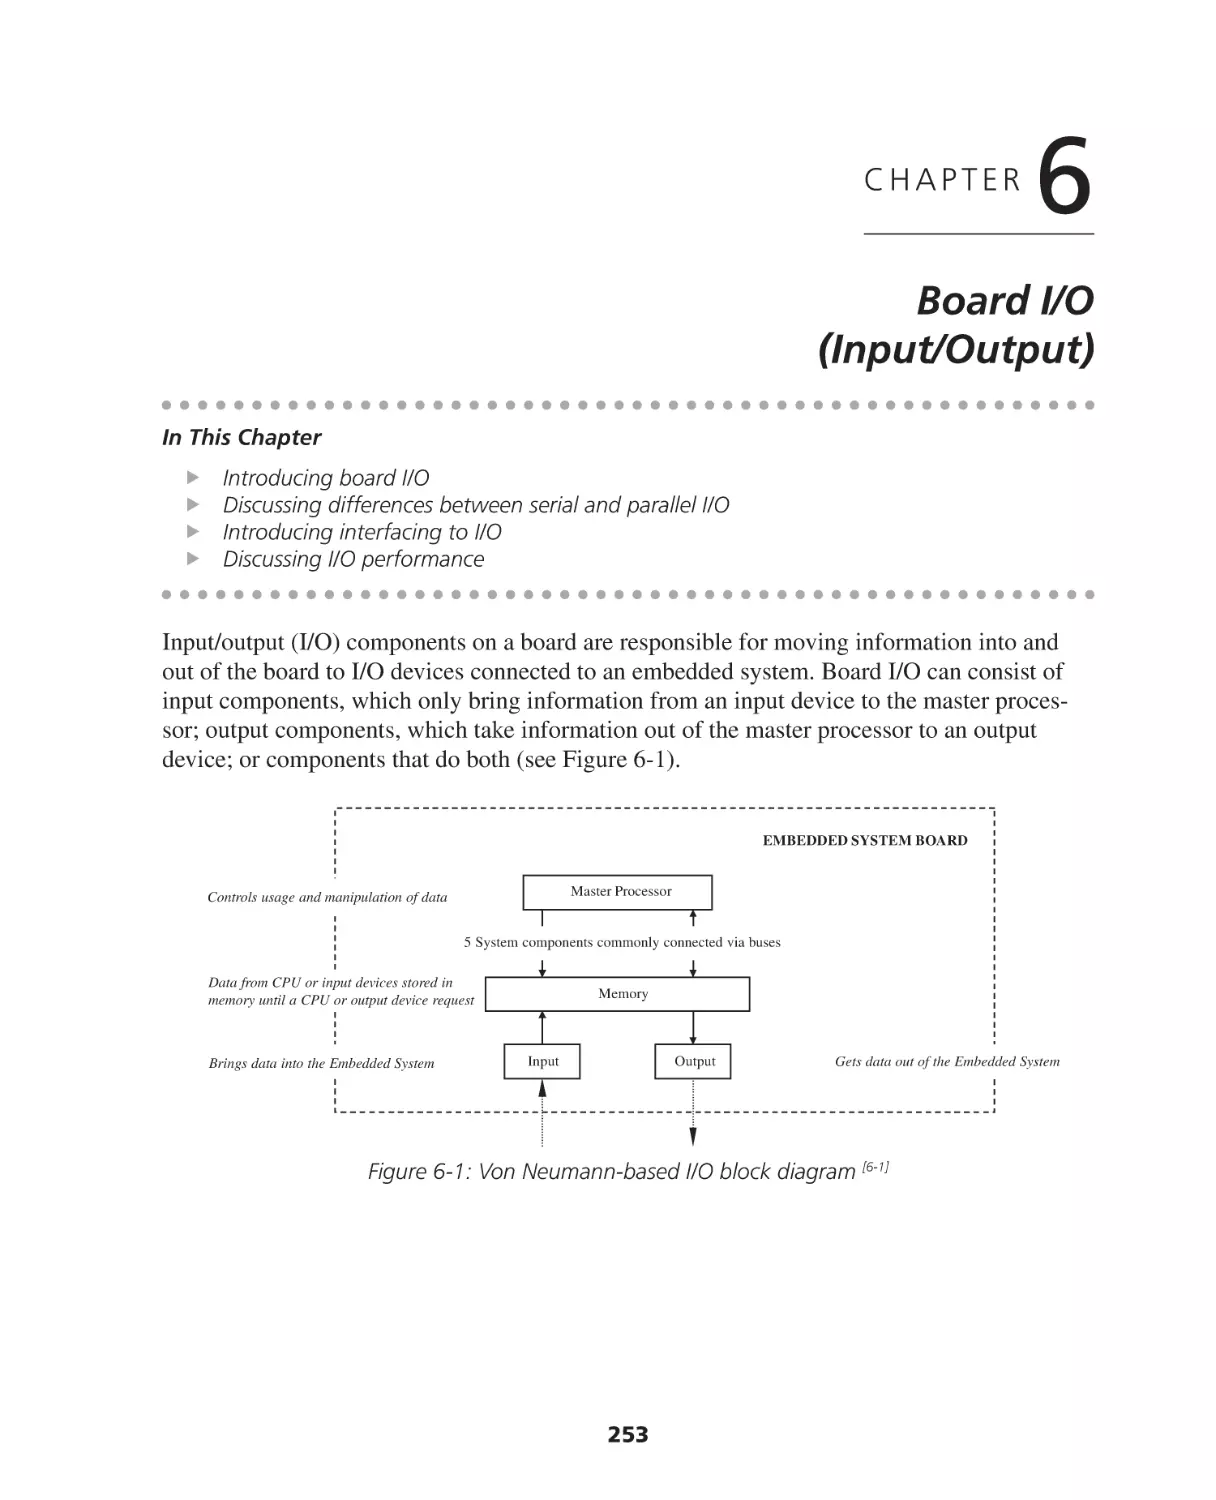 Chapter 6. Board I/O (Input/Output)